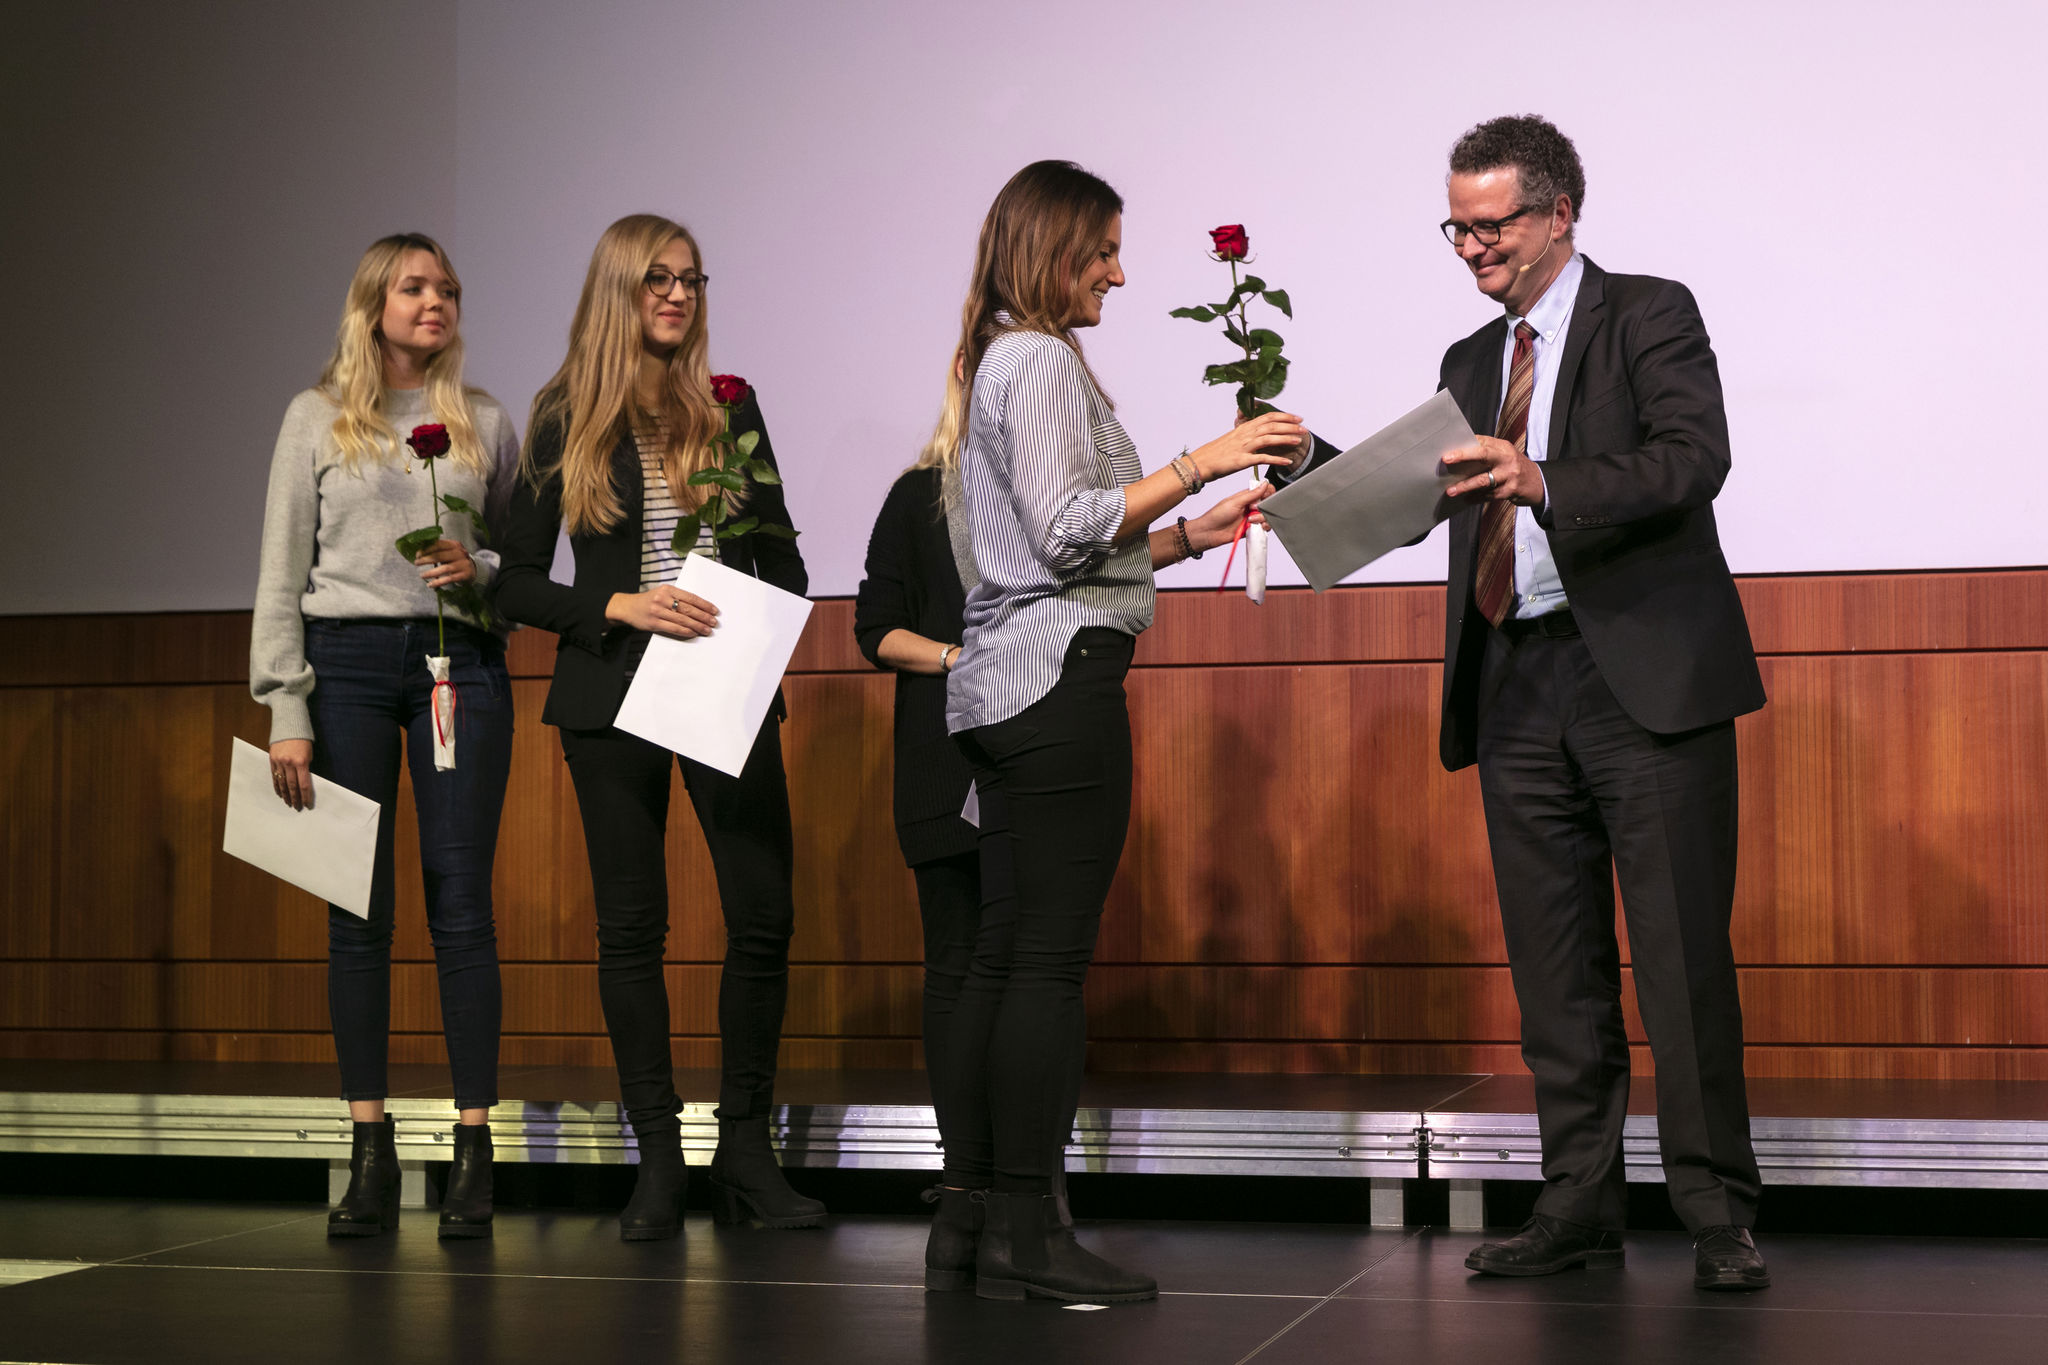 Hochschultag PH Zürich 2018 «Making Citizens» - Politische Bildung in der Schule